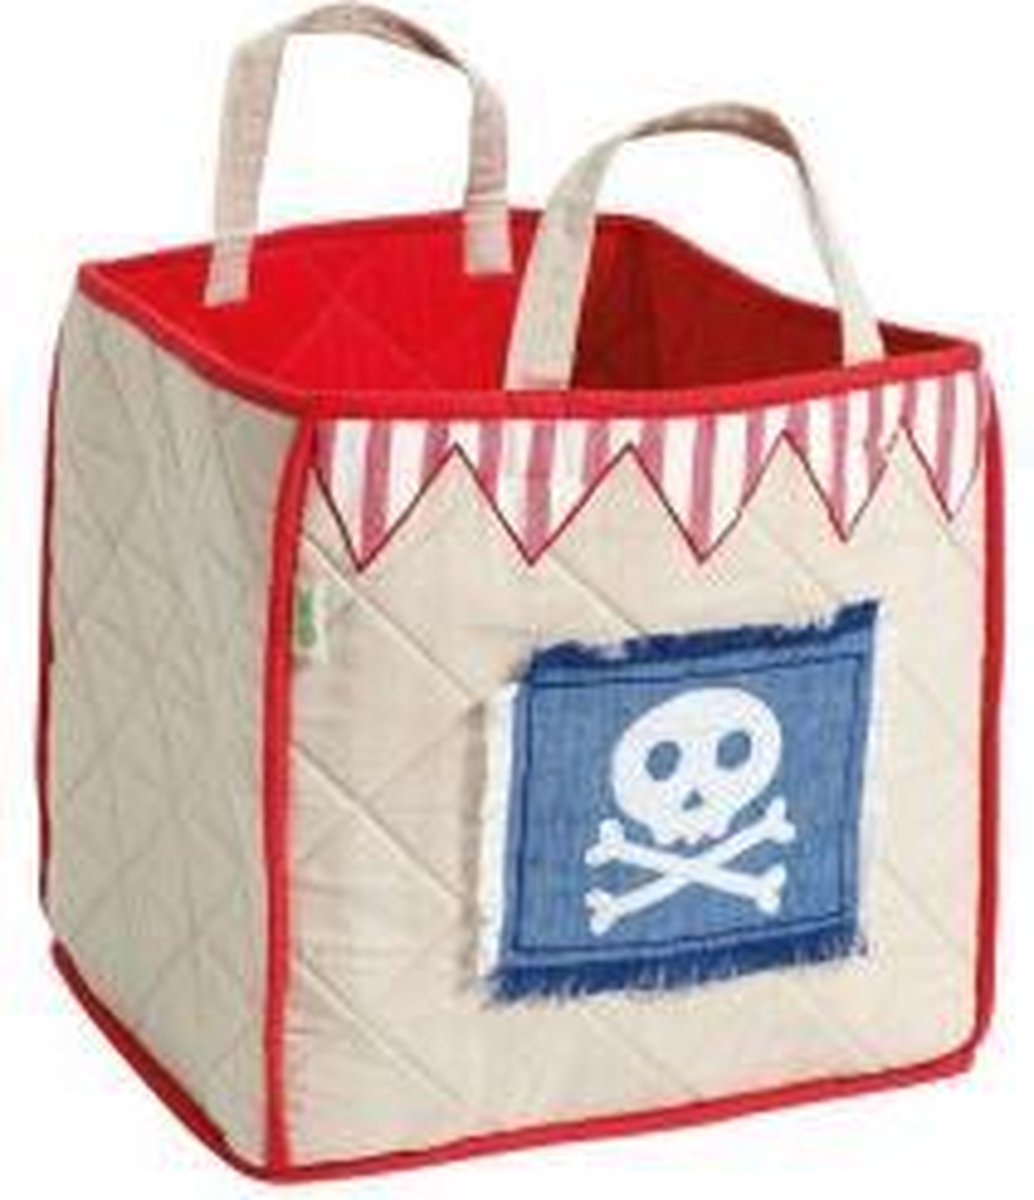 Piraat Speeltent Toy Bag (Win Green)